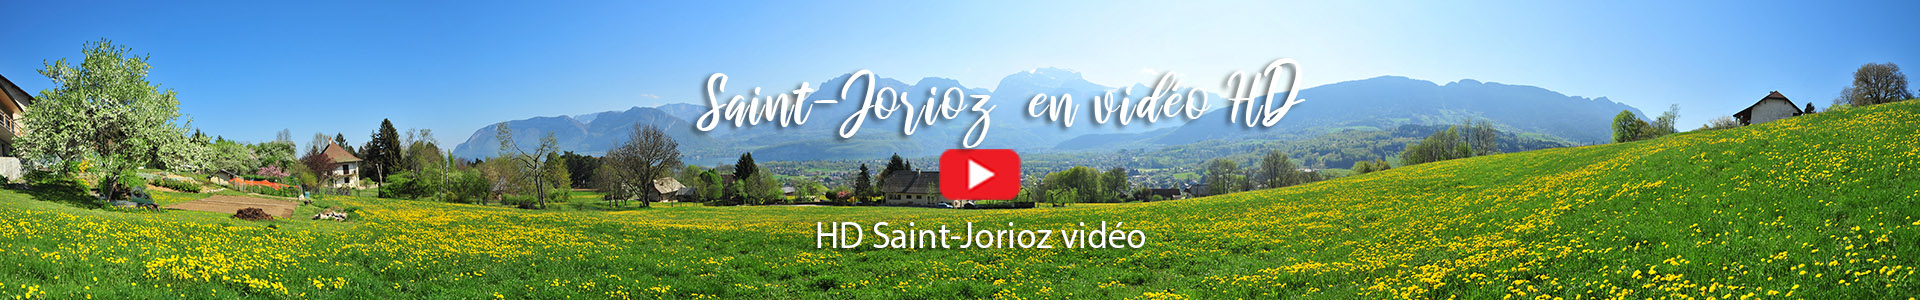 Saint-Jorioz en vidéo